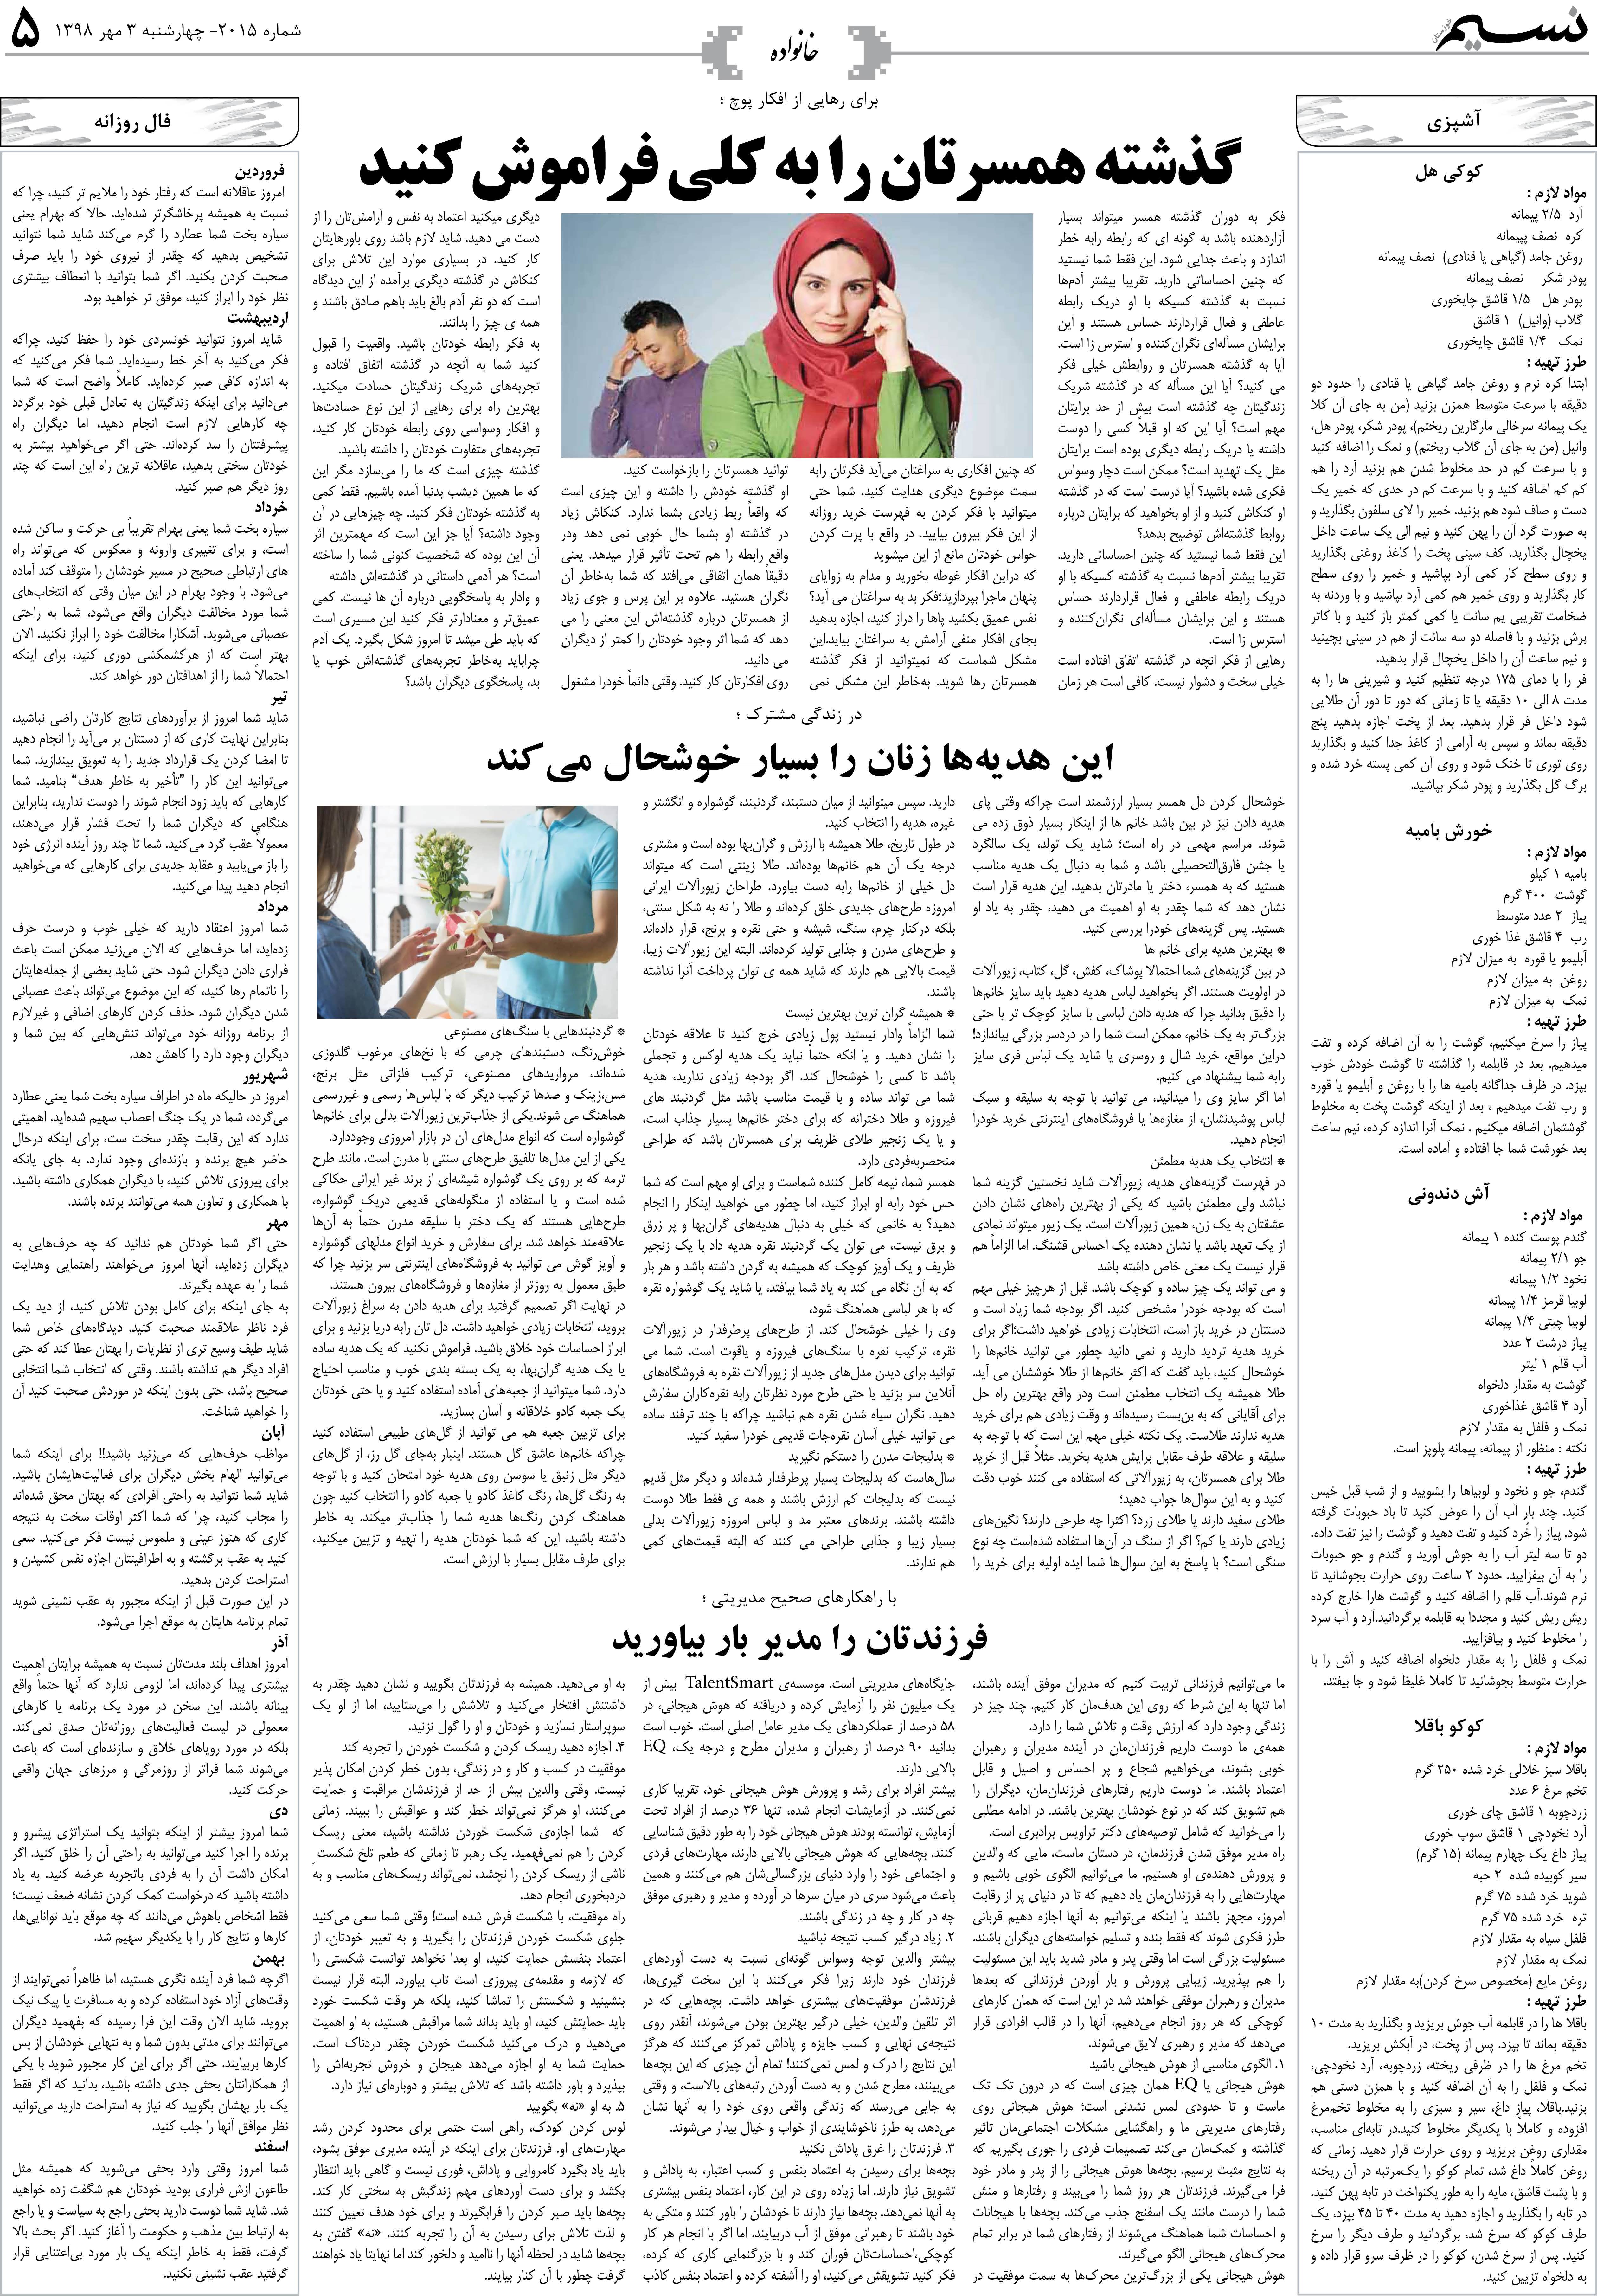 صفحه خانواده روزنامه نسیم شماره 2015